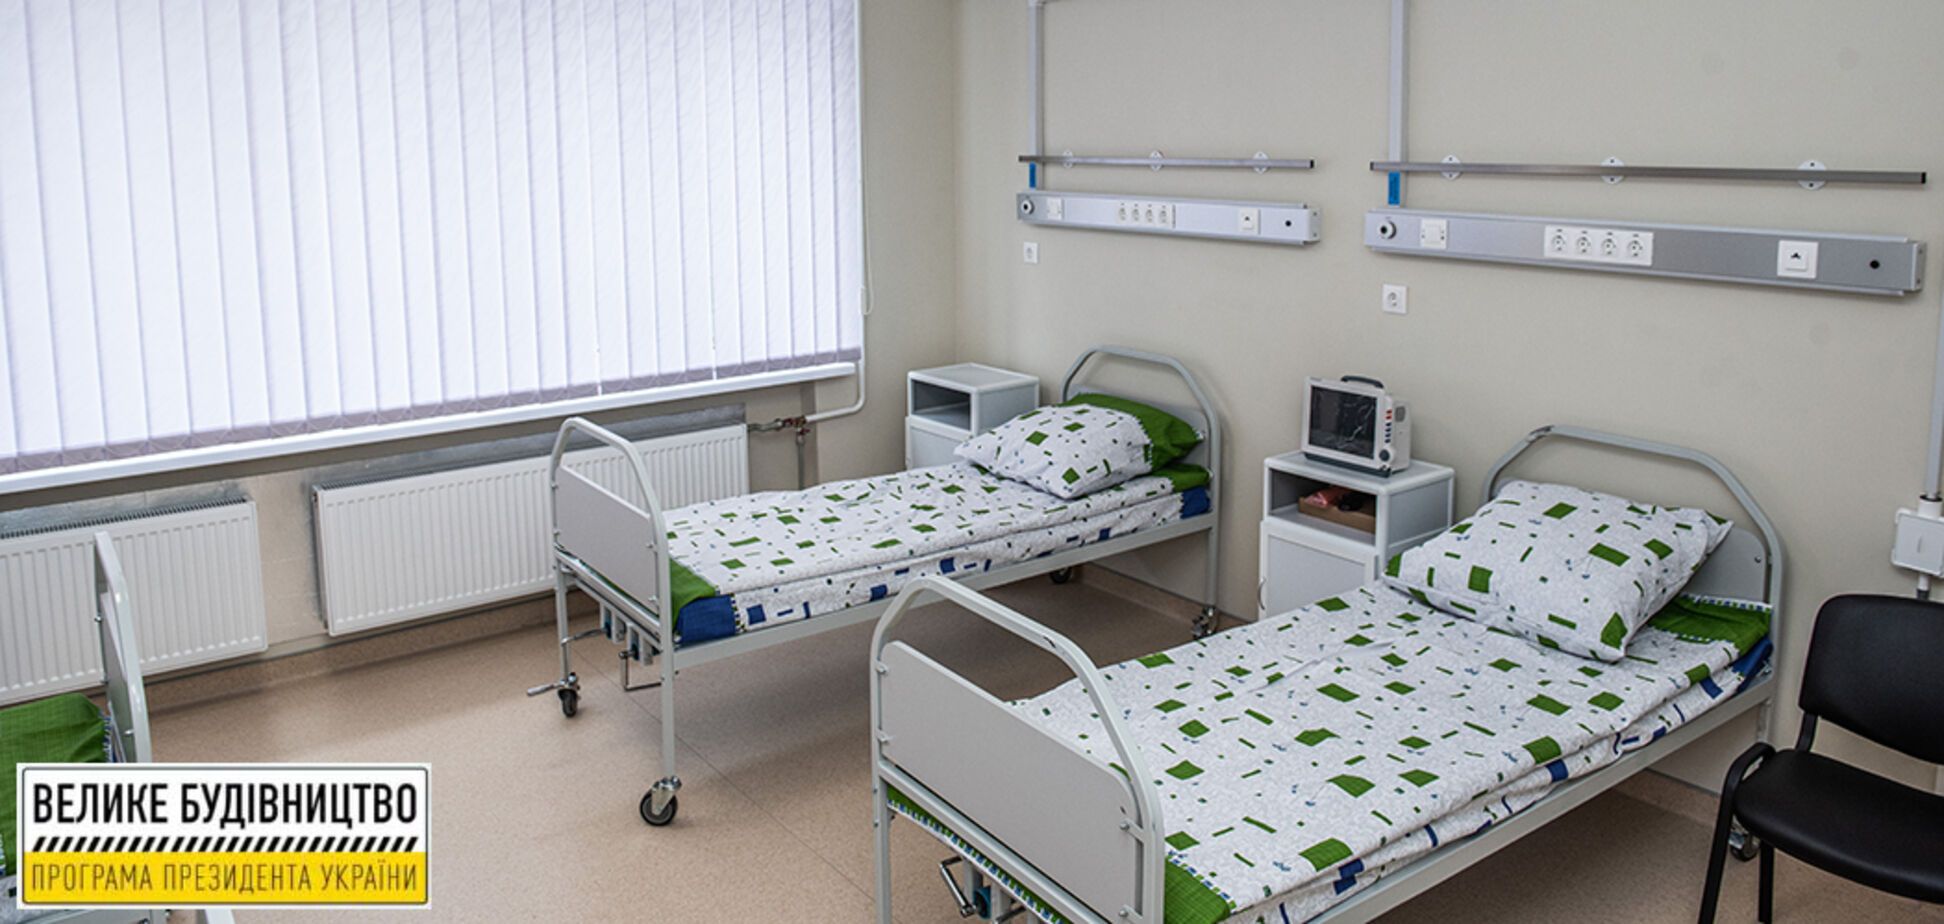 Больница в Конотопе получила современное приемное отделение по программе Зеленского